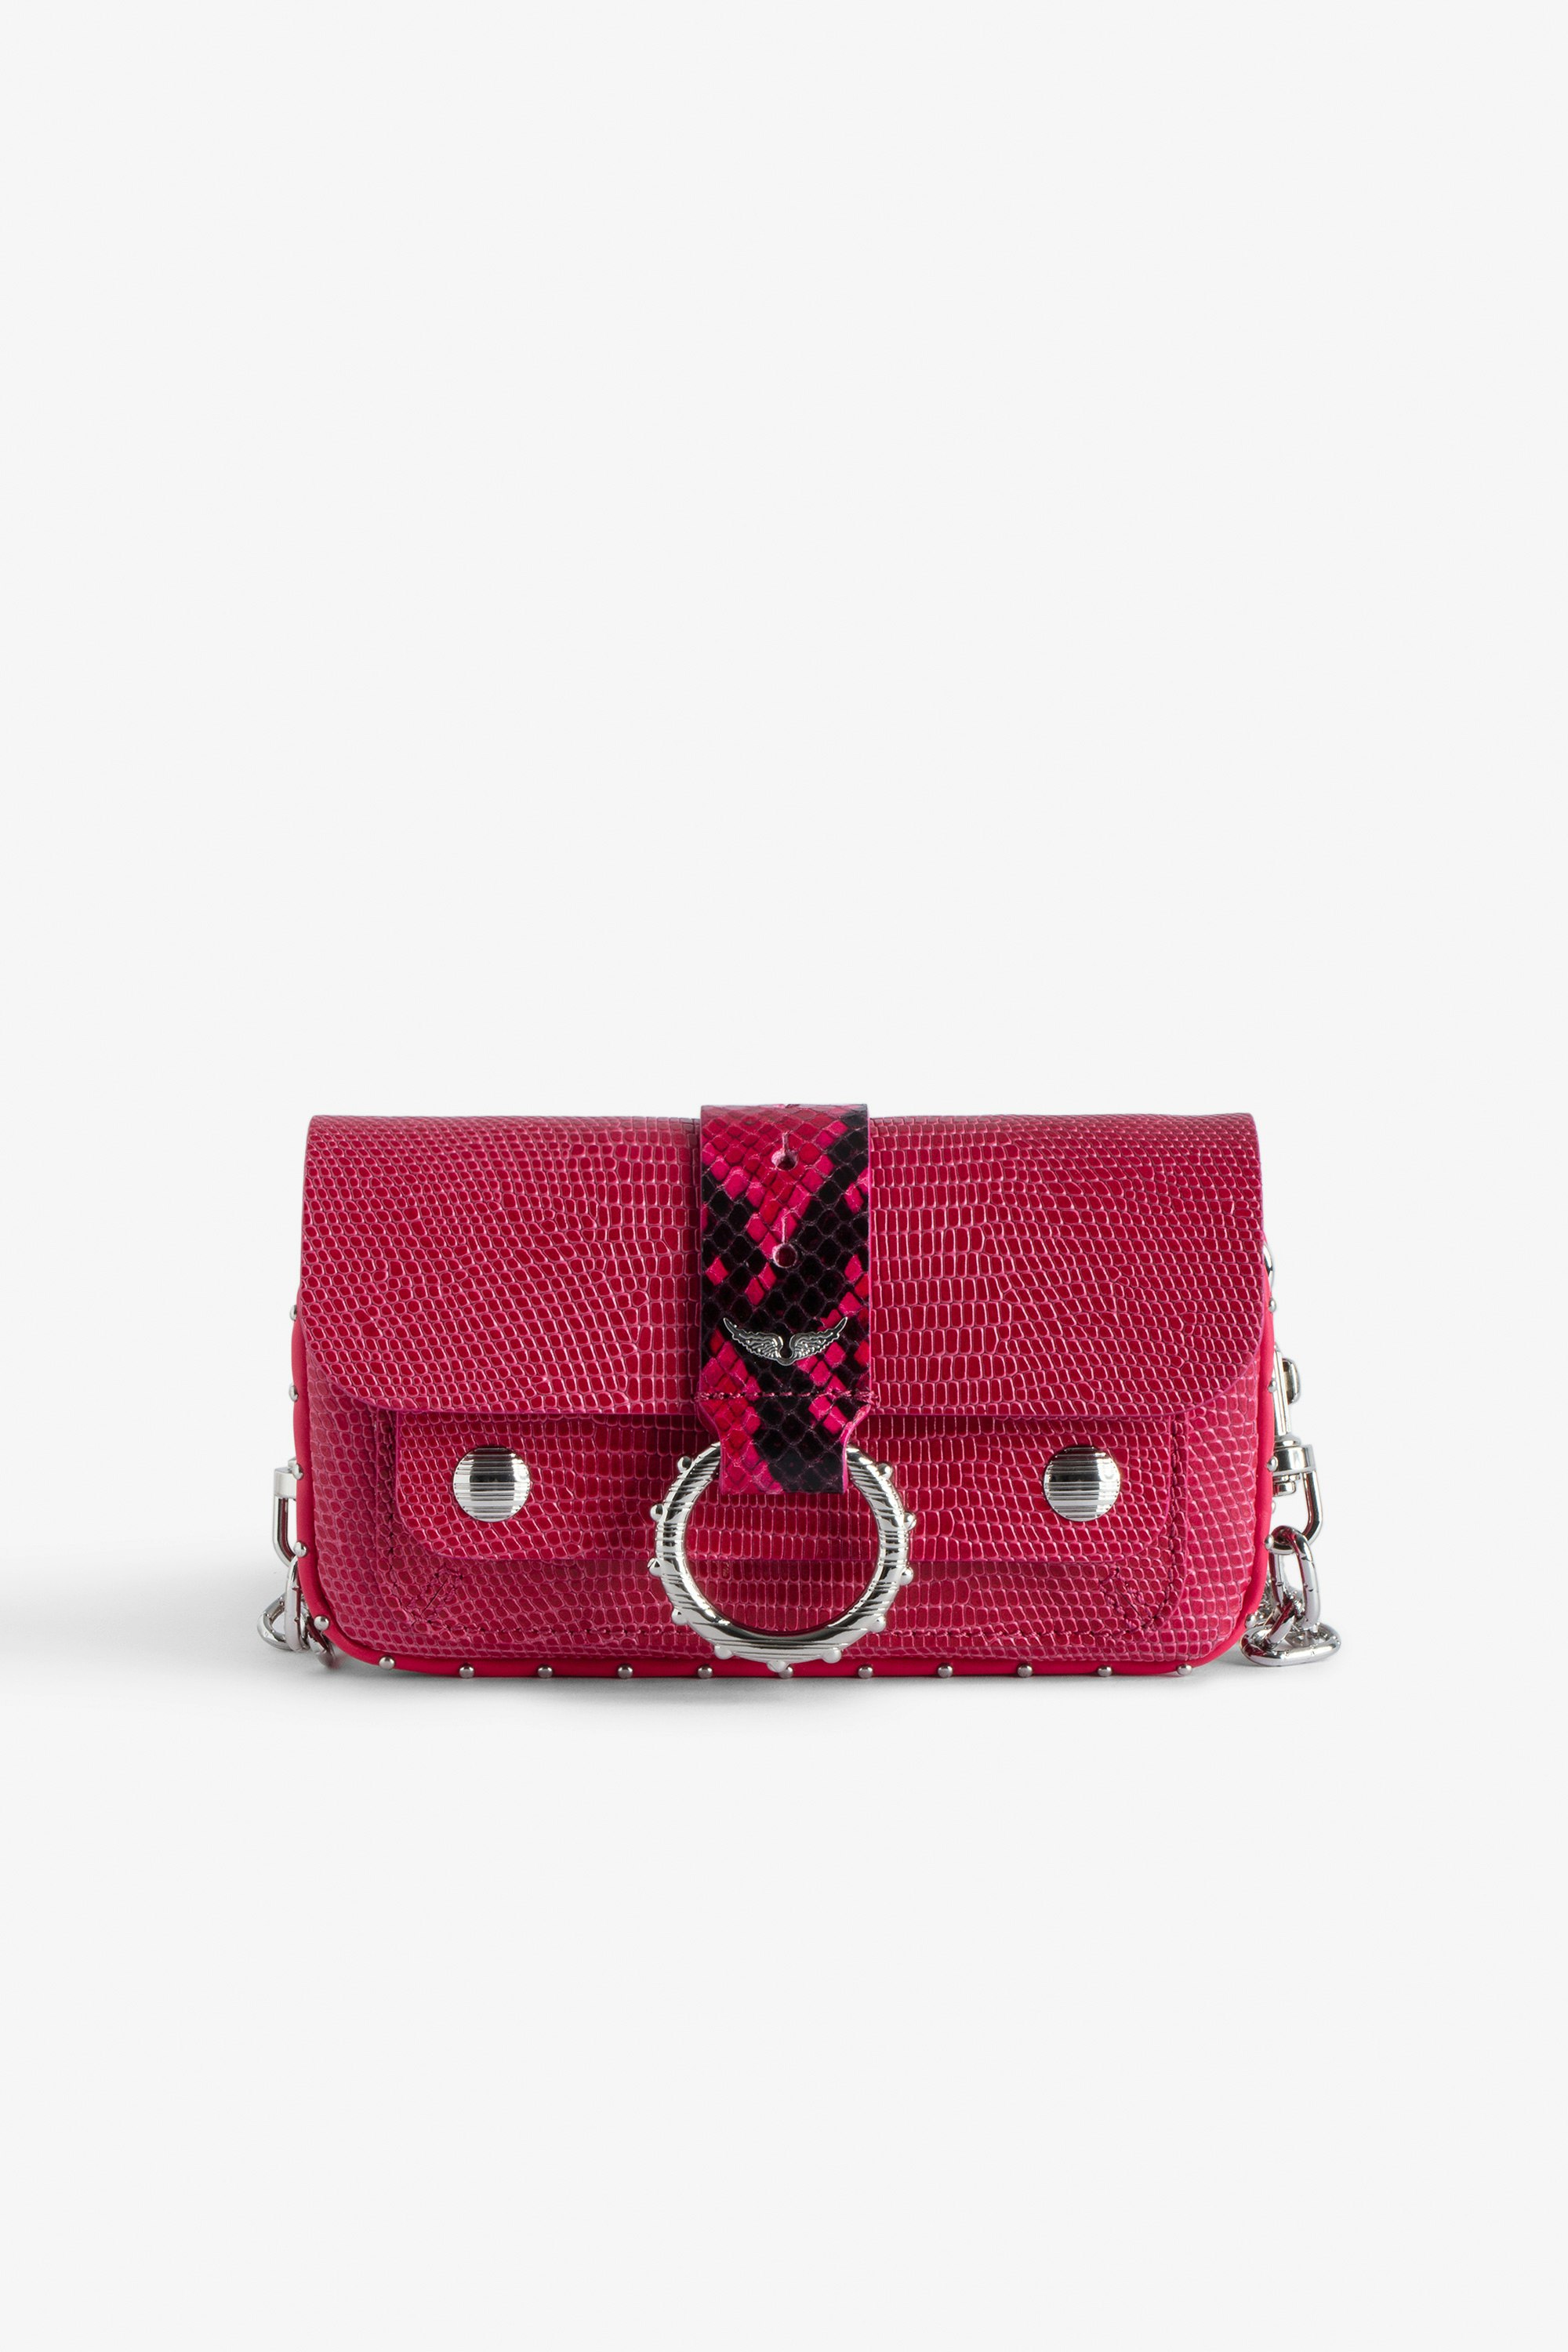 Sac Kate Wallet Embossé Mini sac en cuir embossé rose effet iguane à chaîne en métal.